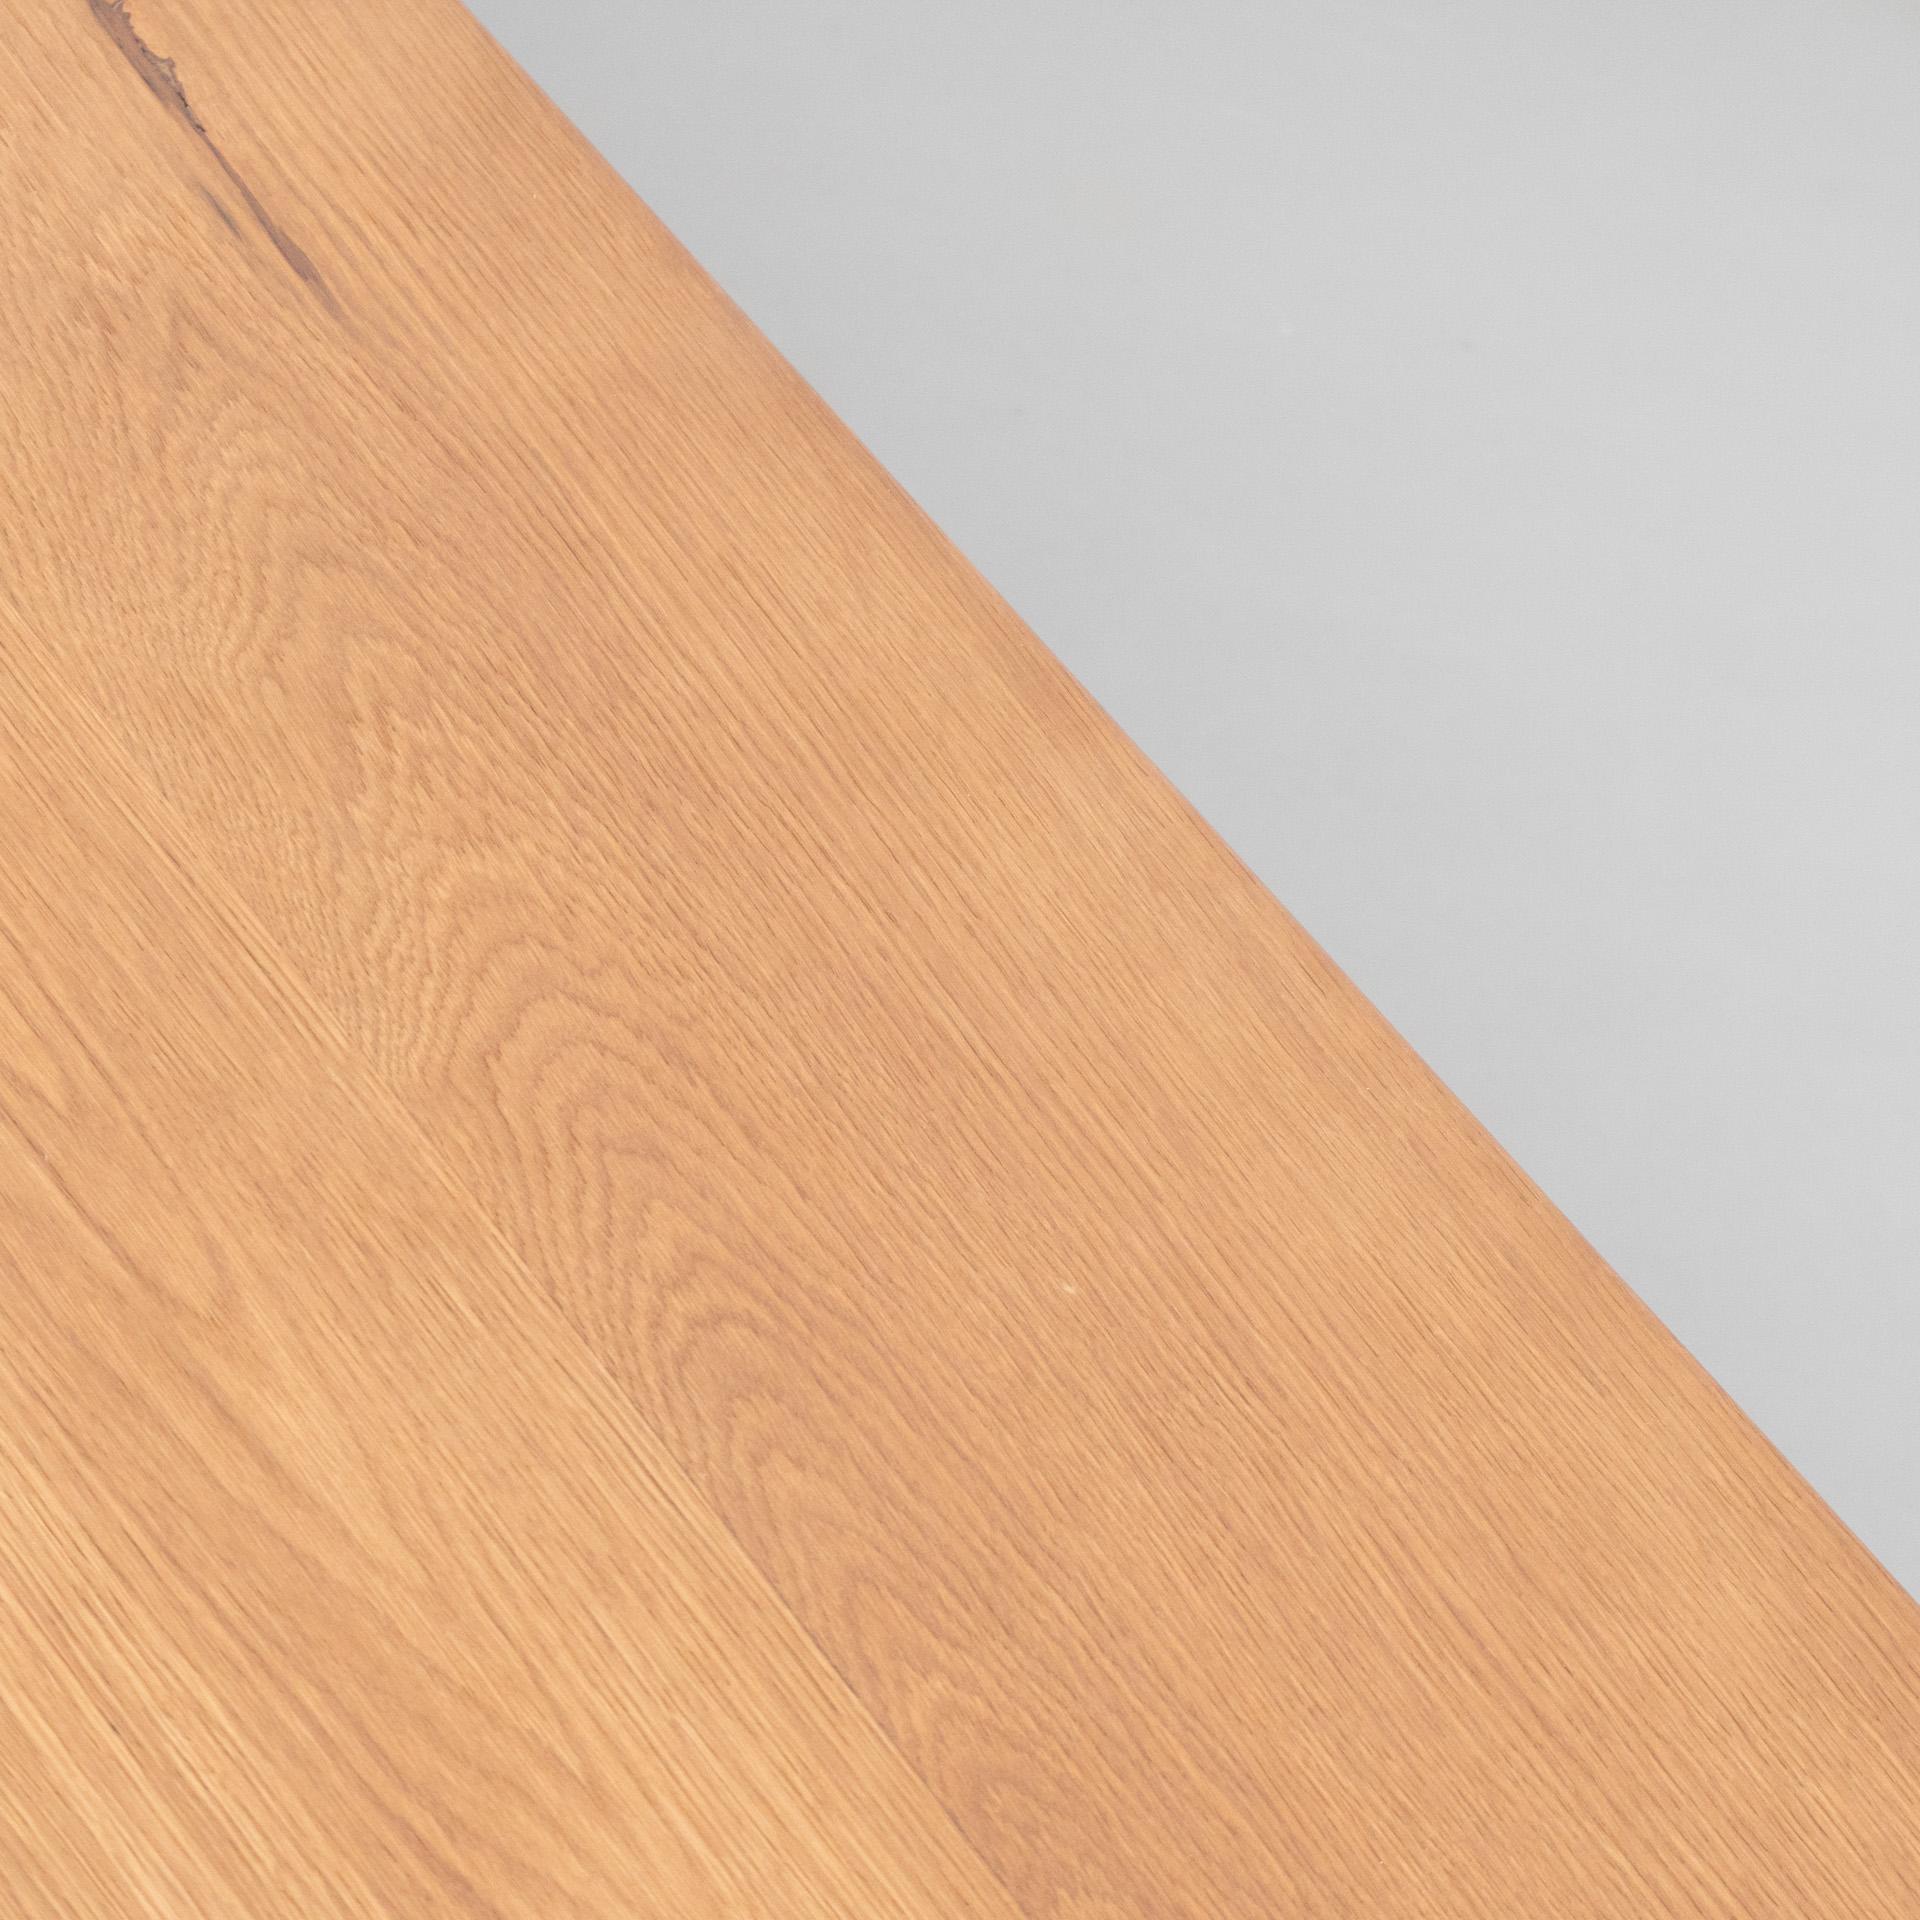 Dada Est. Contemporary Solid Oak Low Table 2